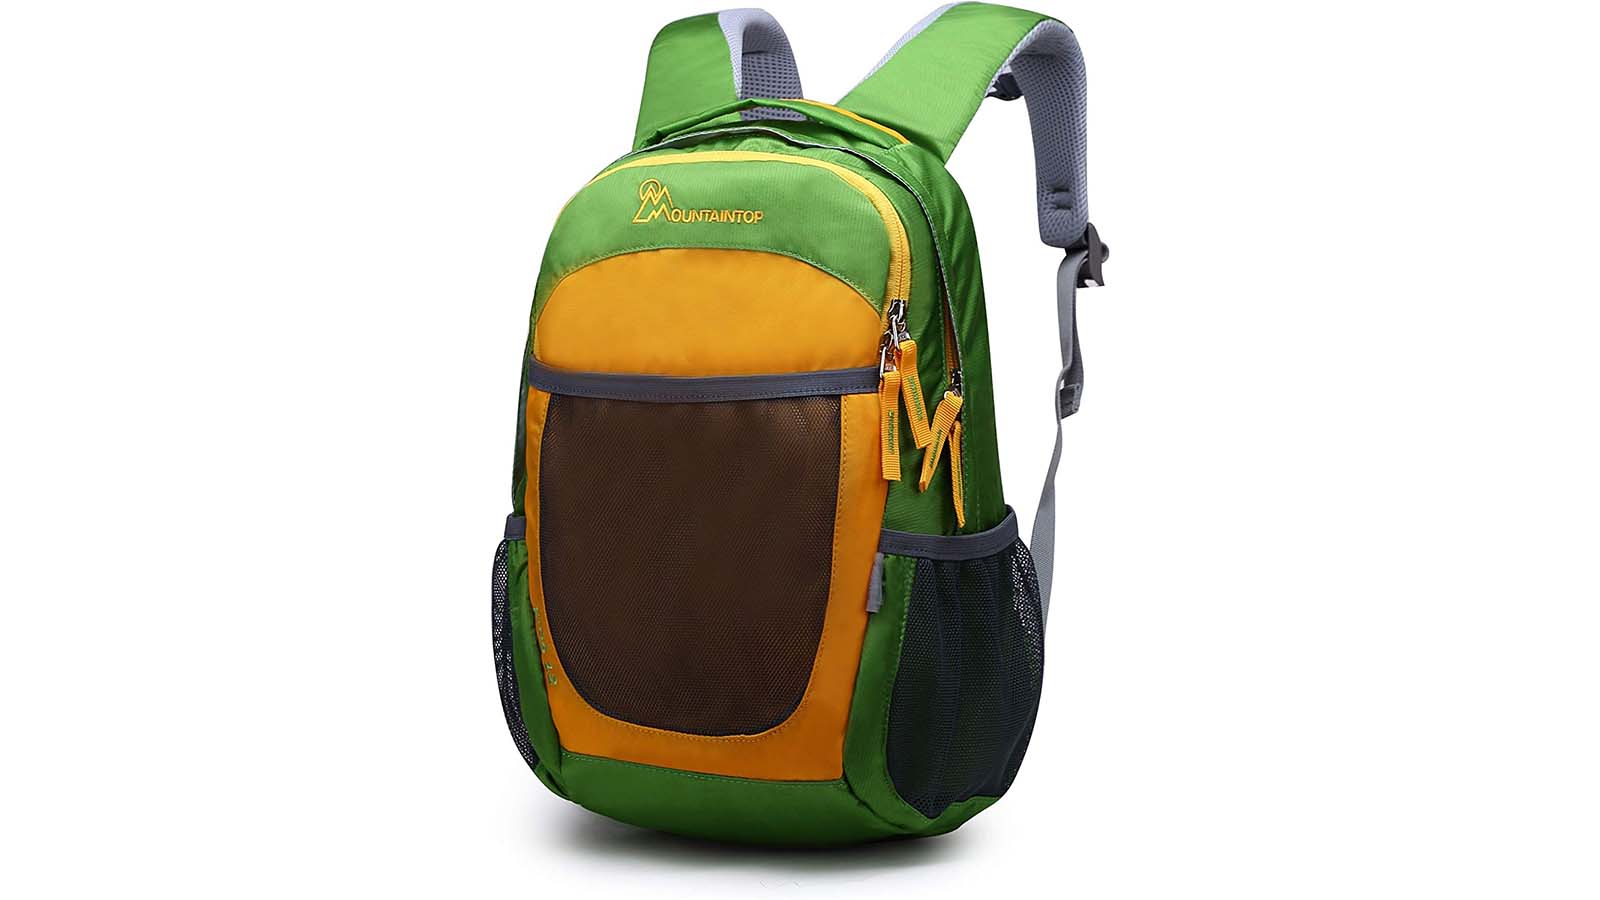 https://media.cnn.com/api/v1/images/stellar/prod/underscored-kidstravelbackpack-mountaintop-kids-backpack.jpg?q=h_900,w_1600,x_0,y_0